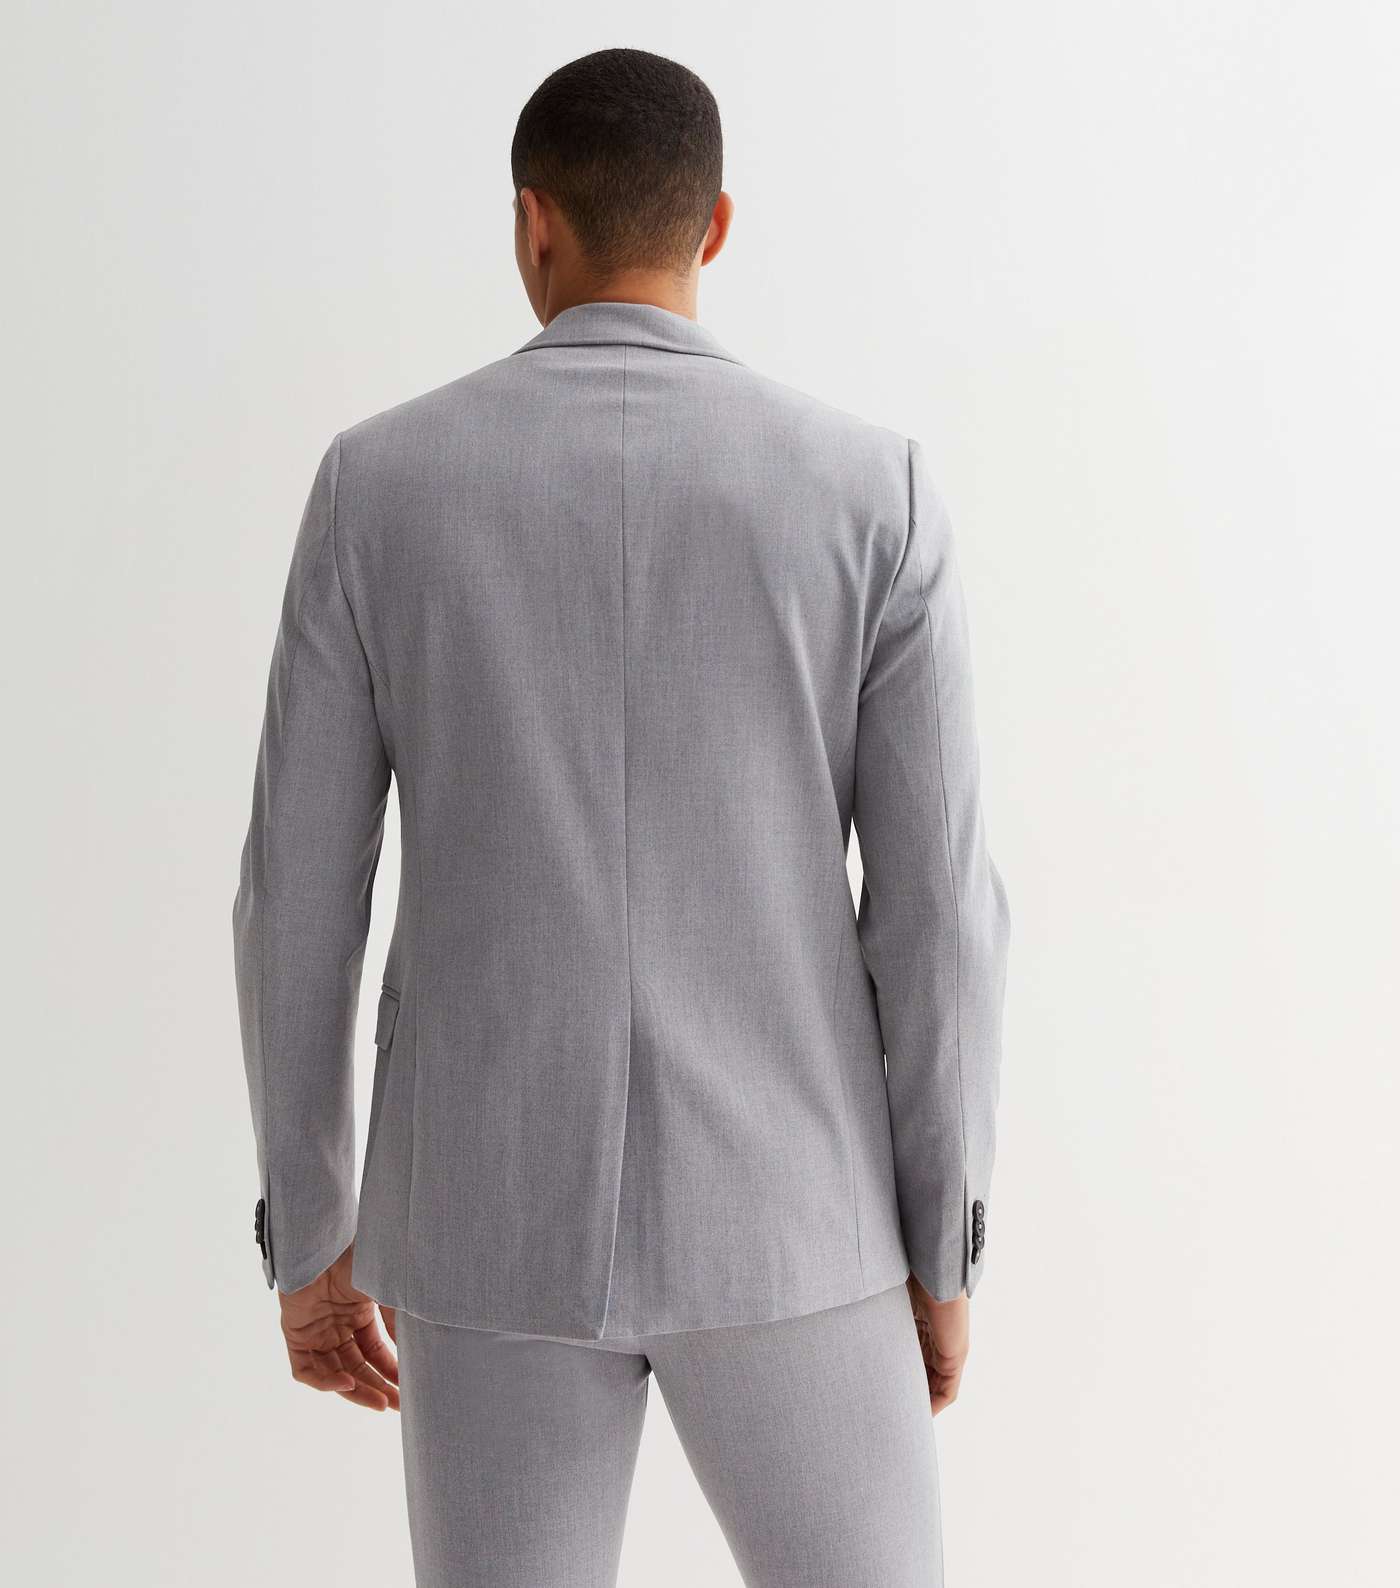 Grey Marl Super Skinny Fit Suit Jacket Image 4